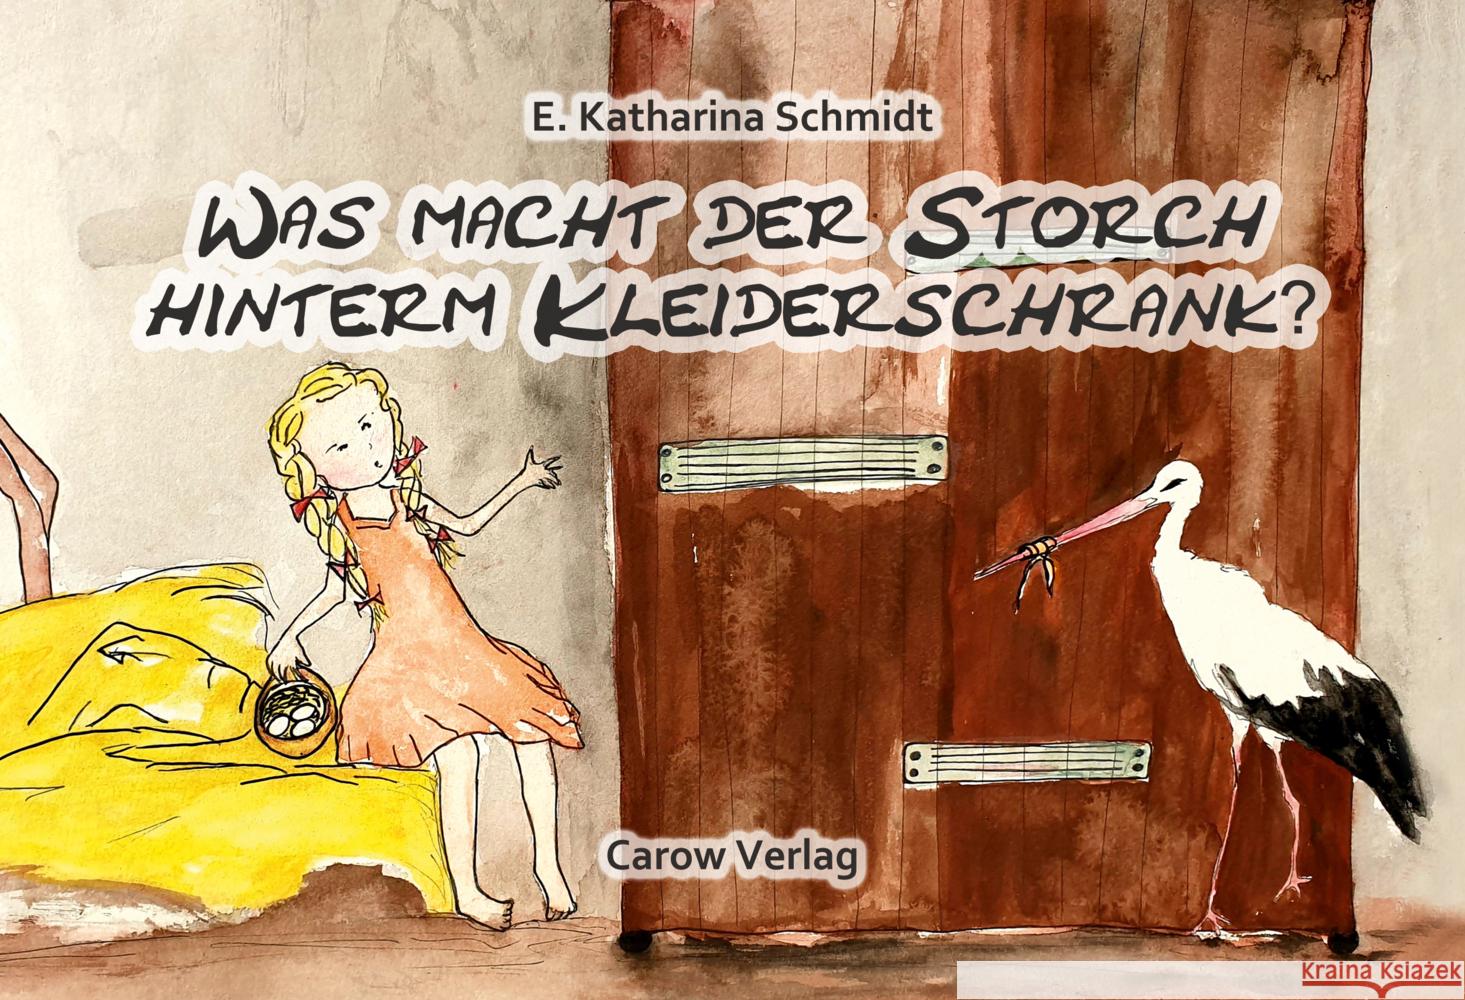 Was macht der Storch hinterm Kleiderschrank? Schmidt, Ewa Katharina 9783944873671 Carow Verlag - książka